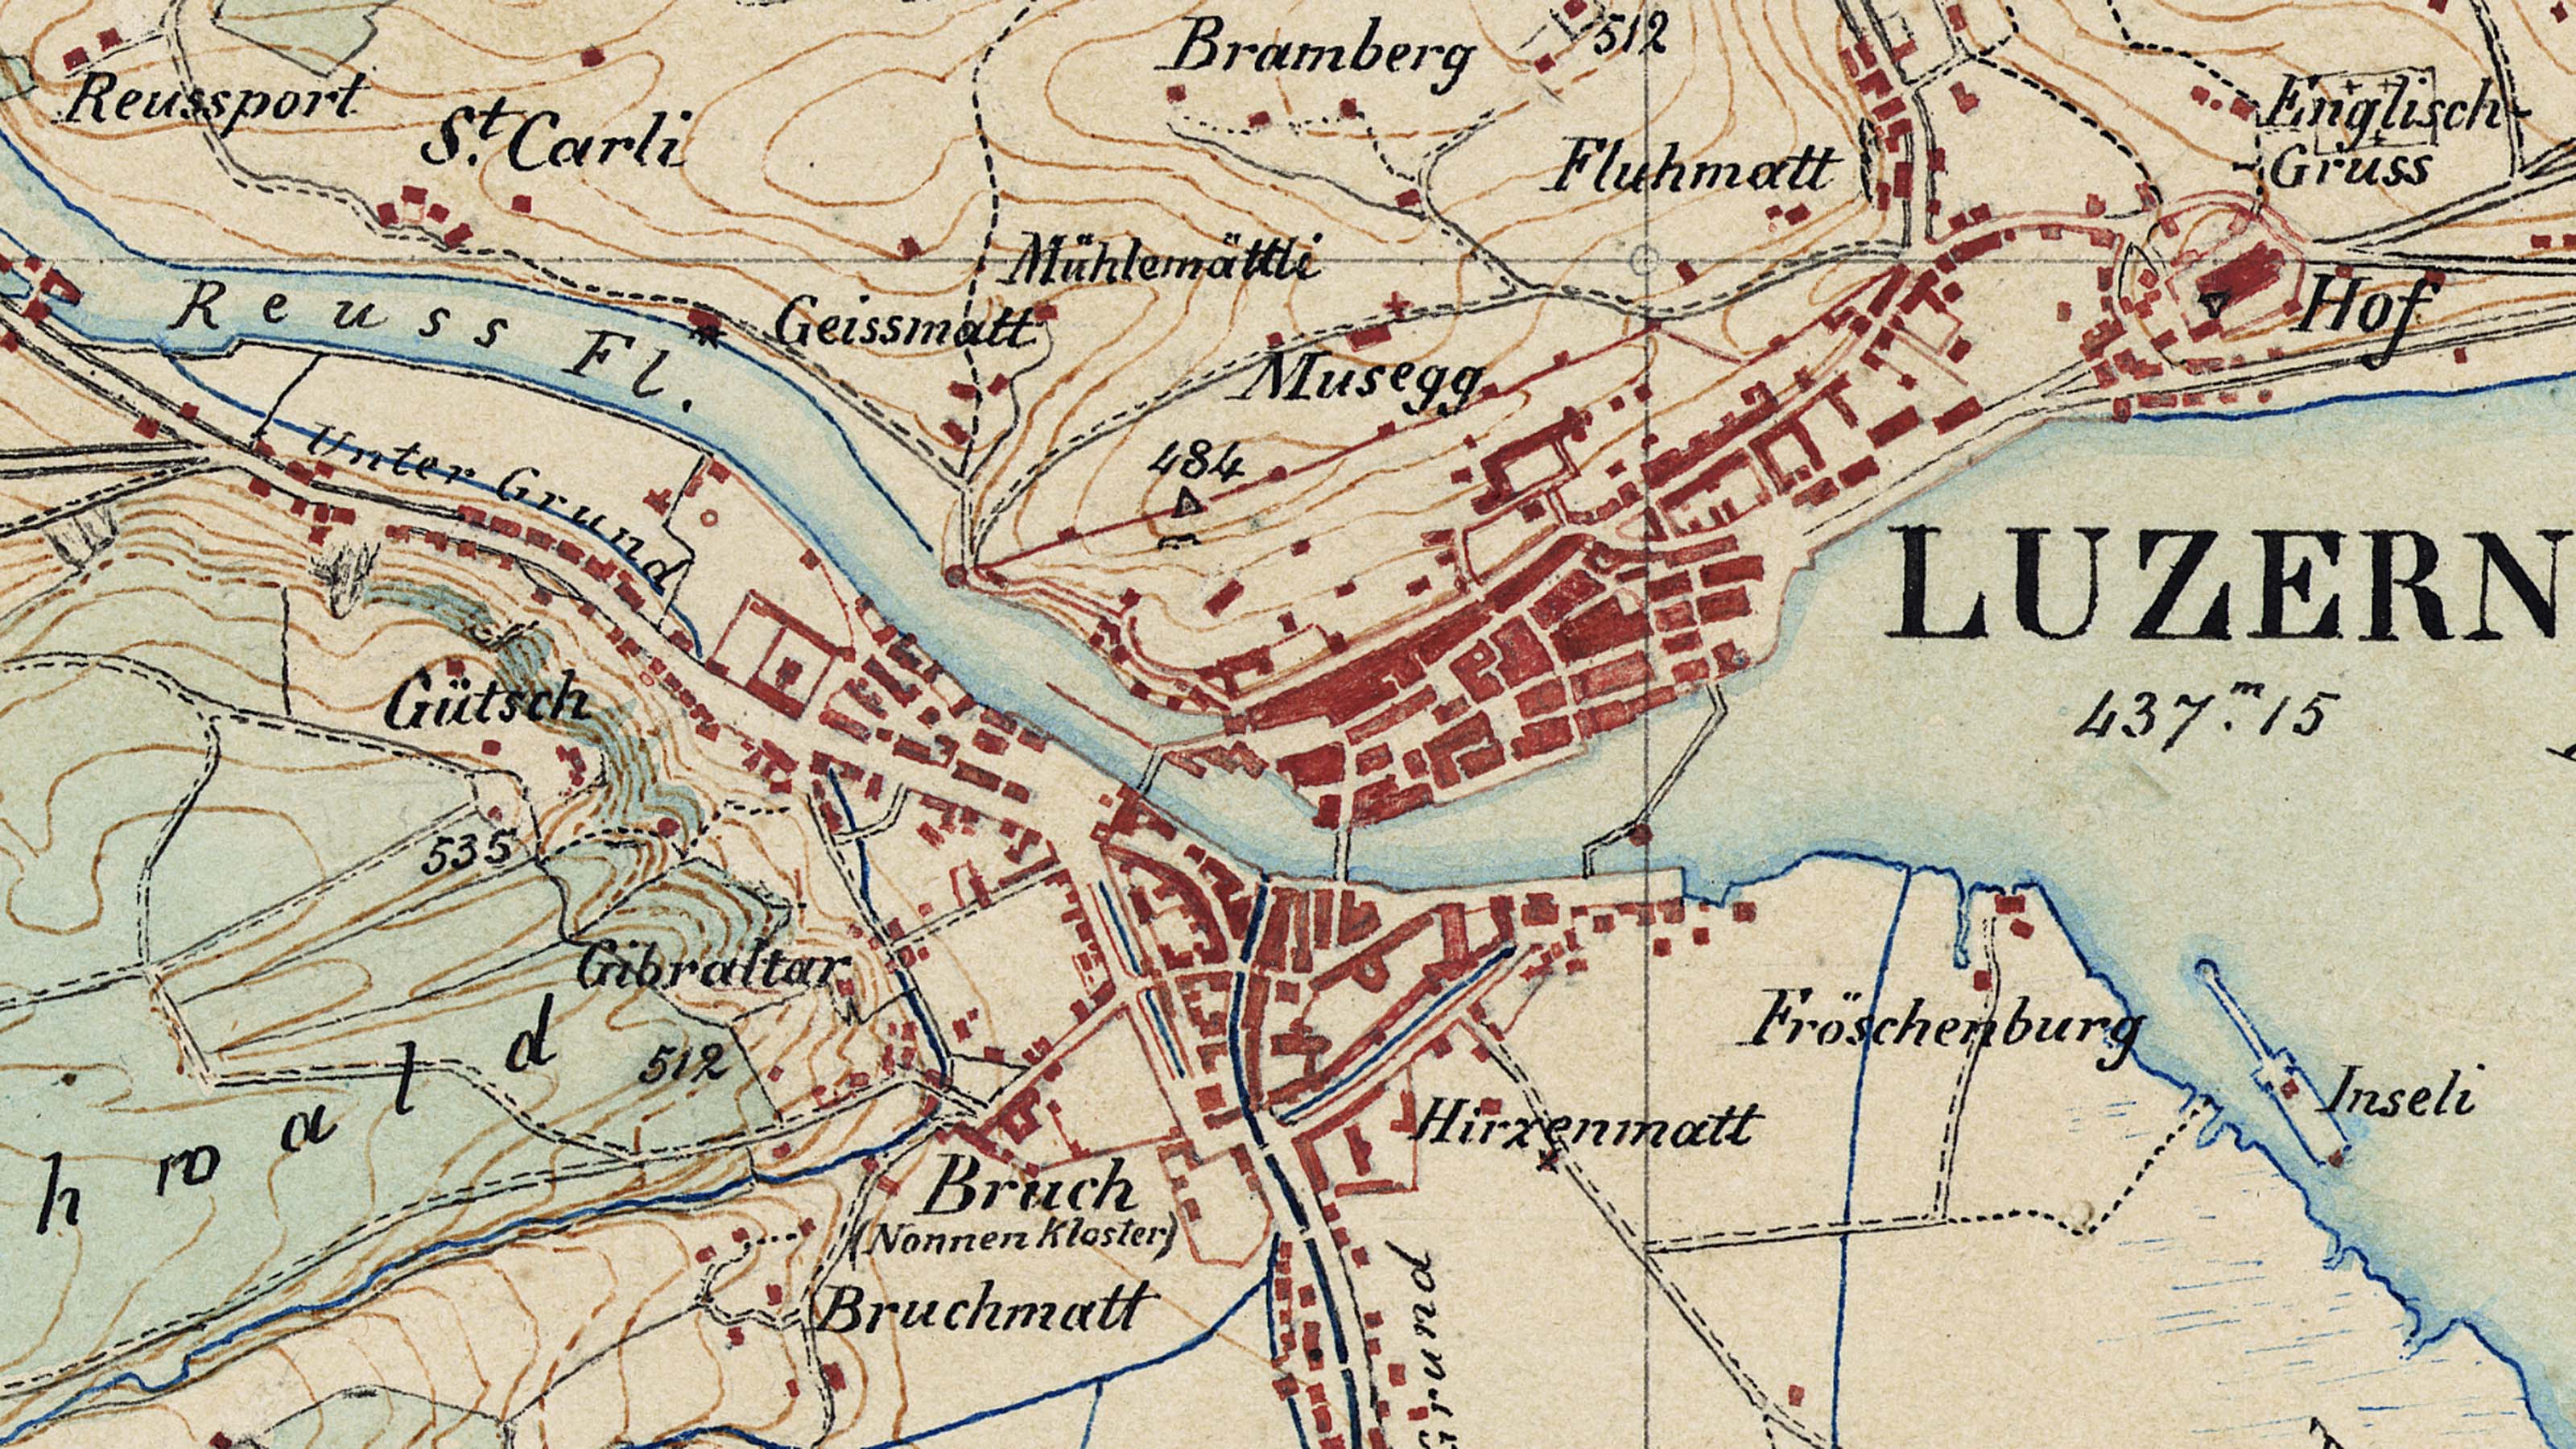 Sezione di una mappa originale 1:25 000 del 1856, Lucerna. La mappa disegnata a mano è multicolore e mostra il centro storico di Lucerna, il fiume Reuss e il lago dei Quattro Cantoni.